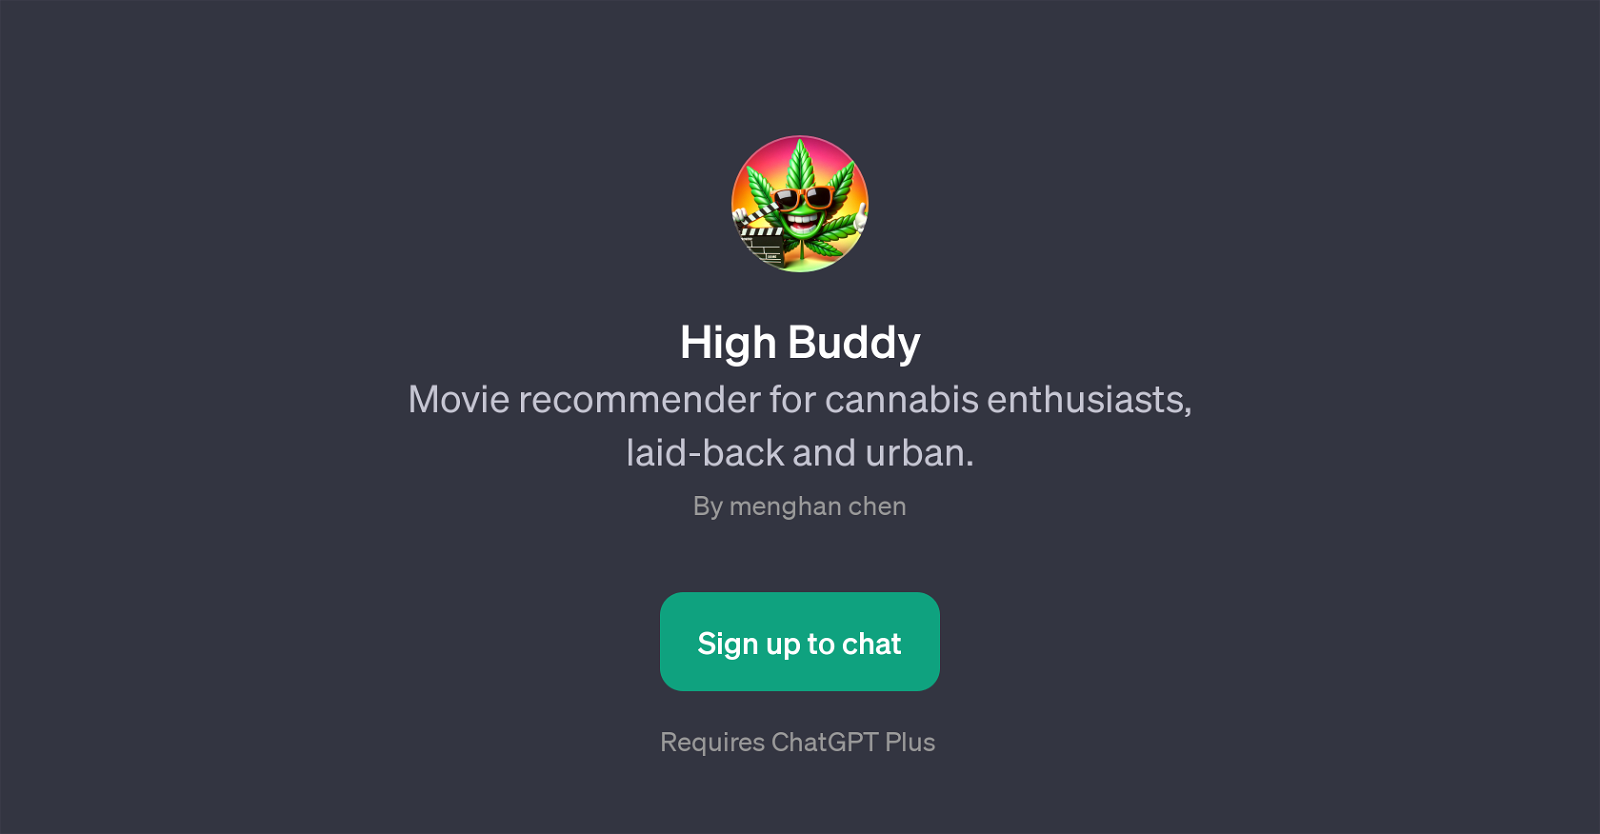 High Buddy website